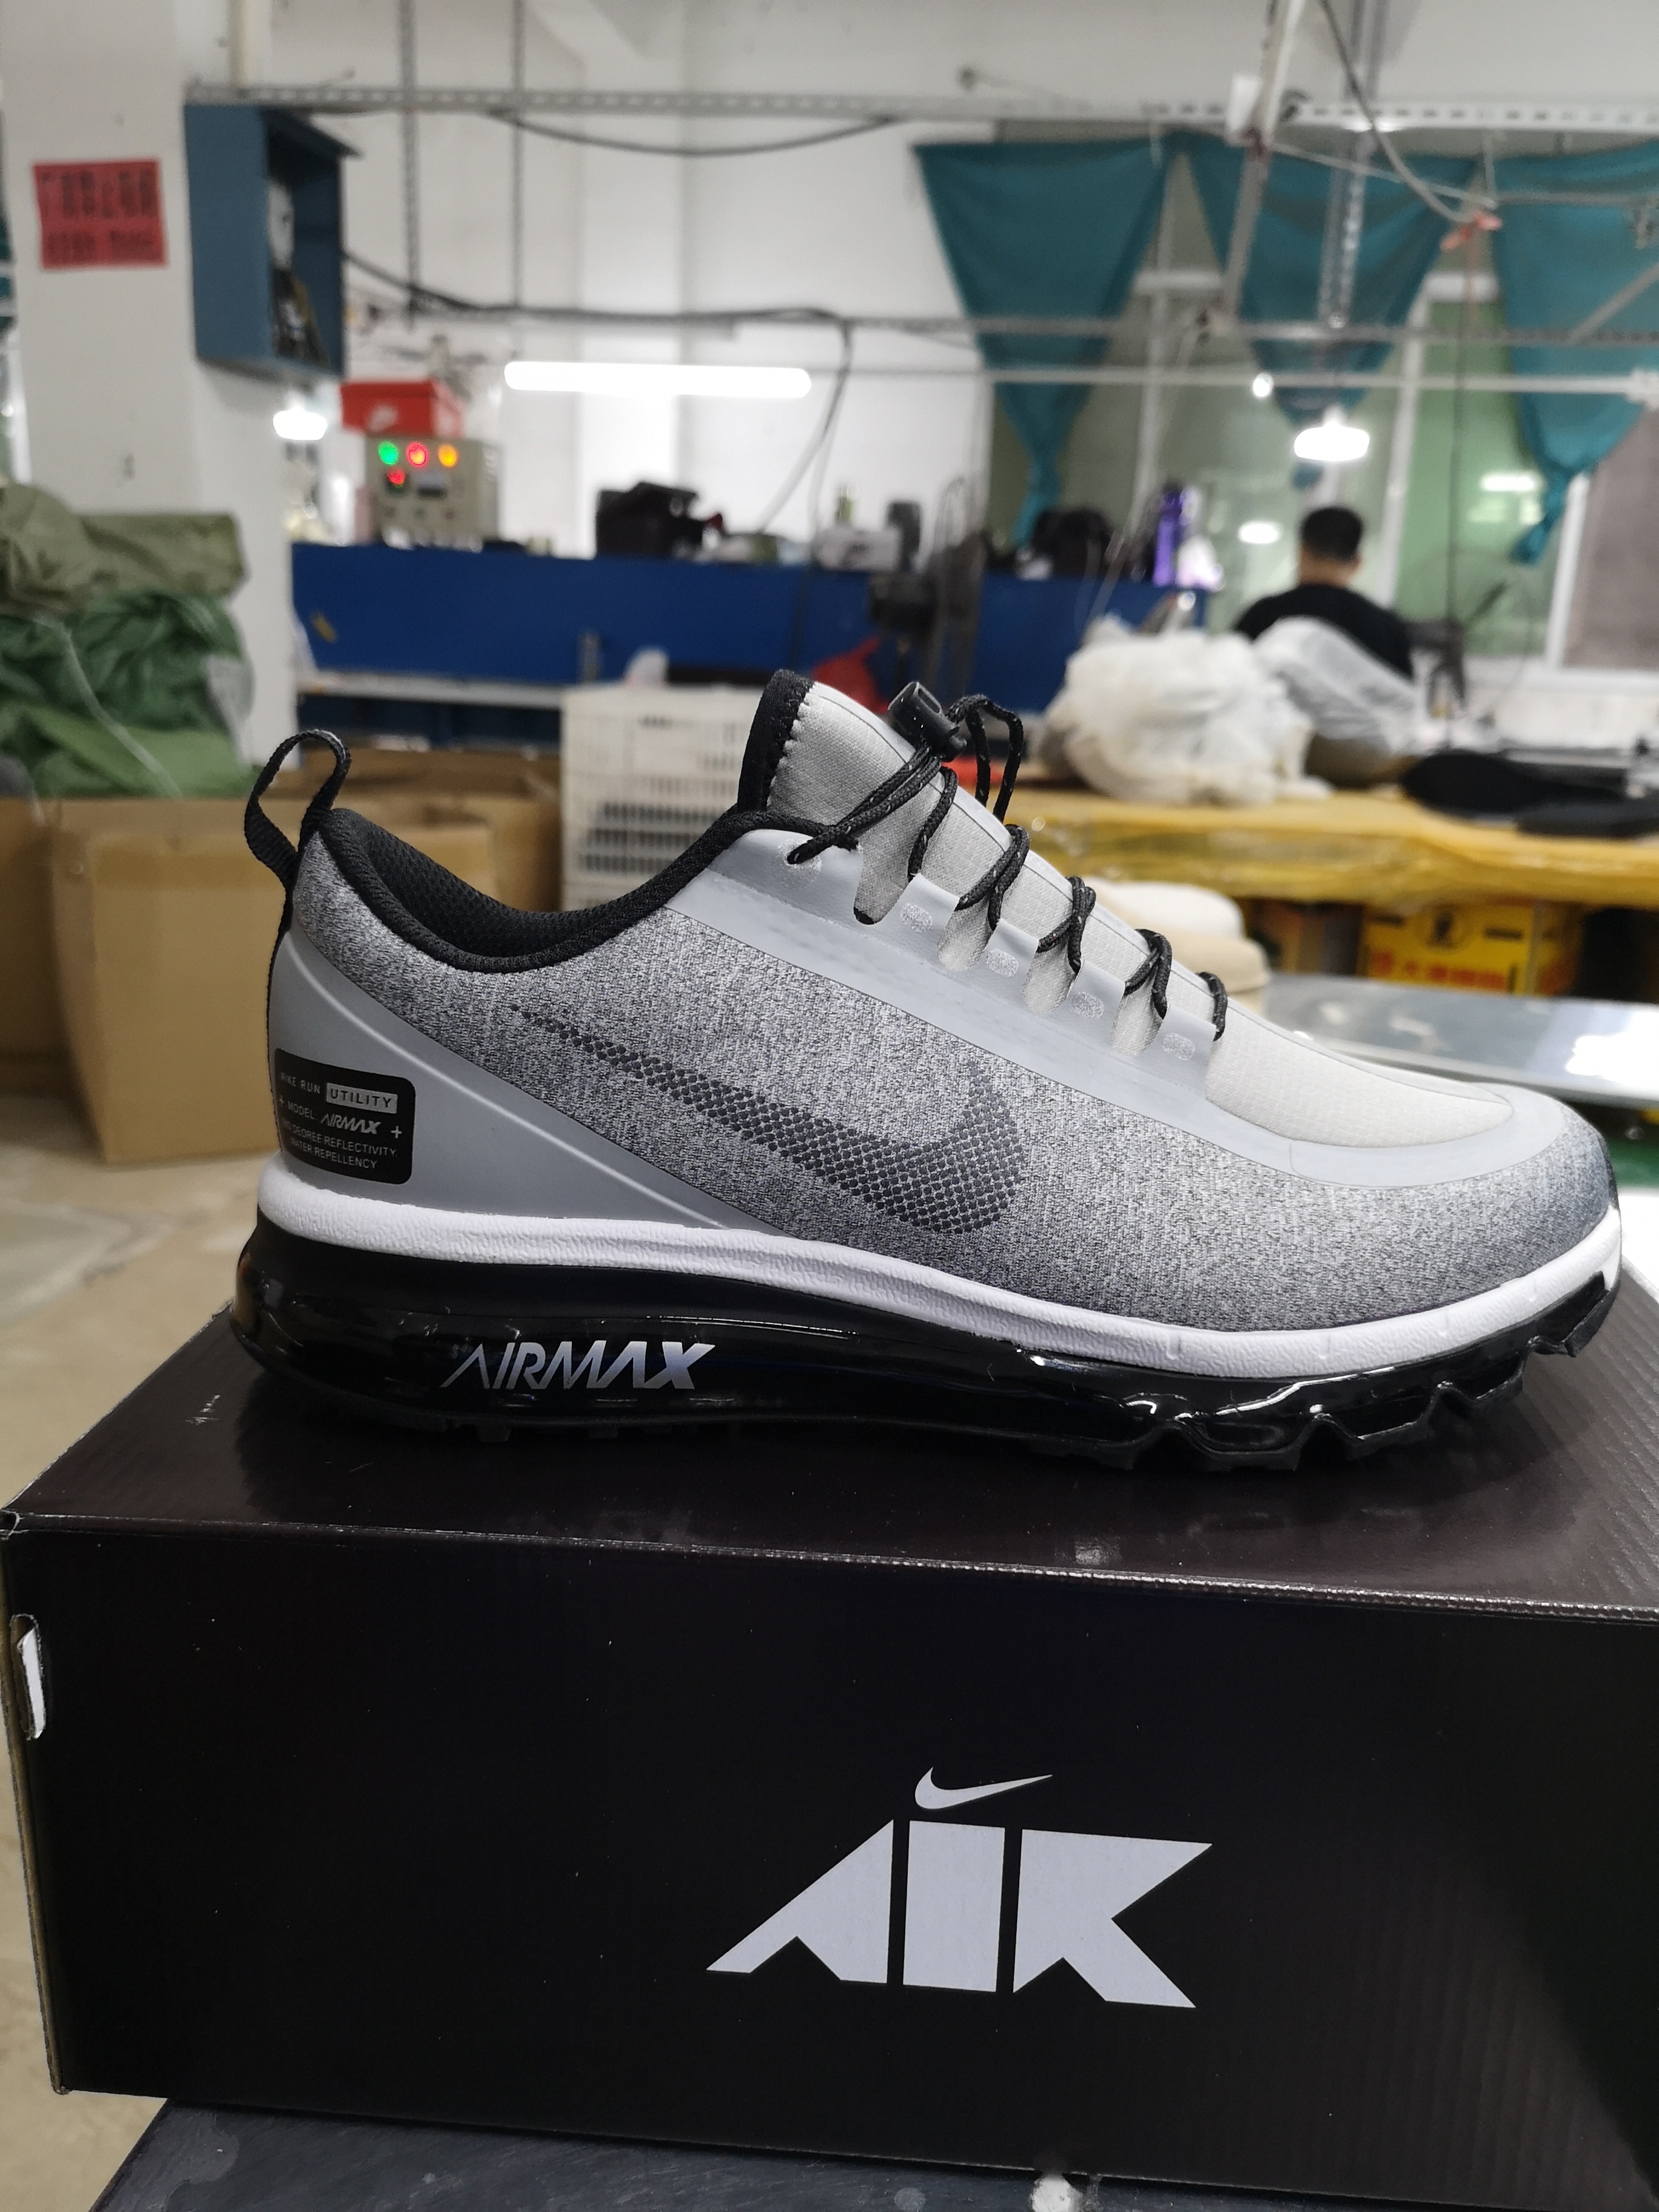 Nike Air Max 2017 Waterproof Grey Black Shoes